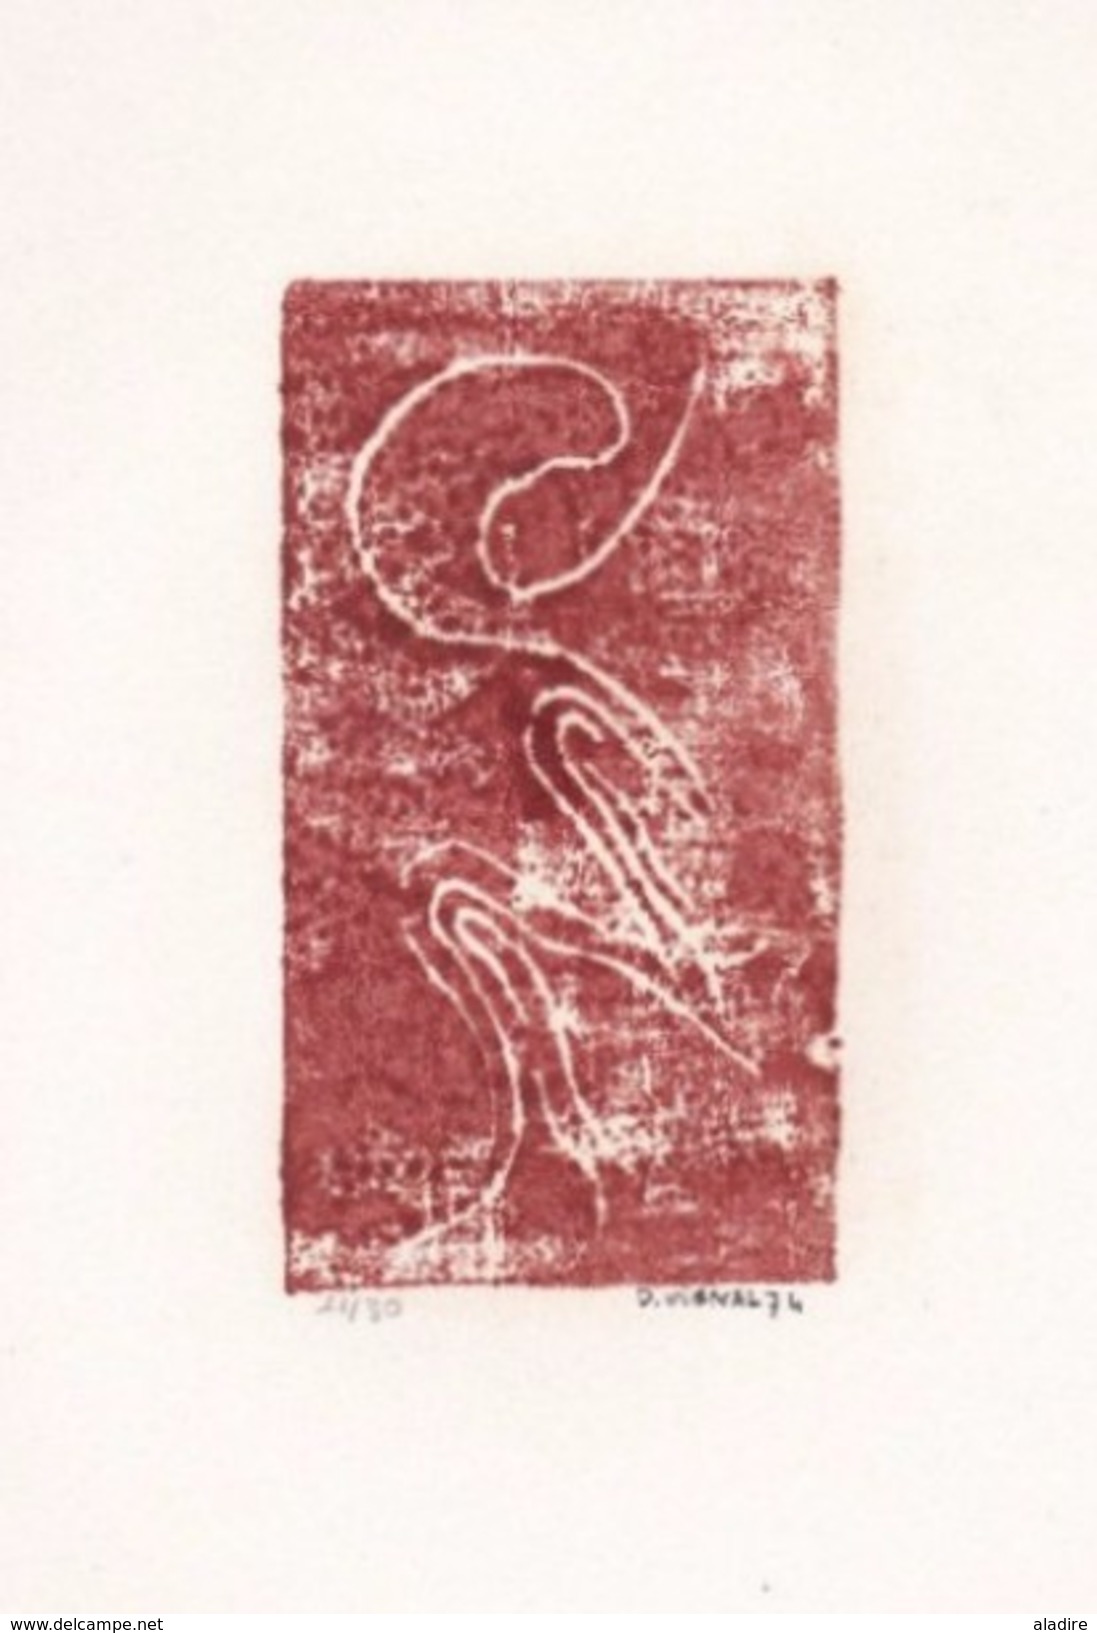 Daniel Vignal - Génuflexion 3 - Bois Gravé - 9 X 14,5 Cm Sur Feuille Canson 24 X 32 Cm, 1974 - Prints & Engravings